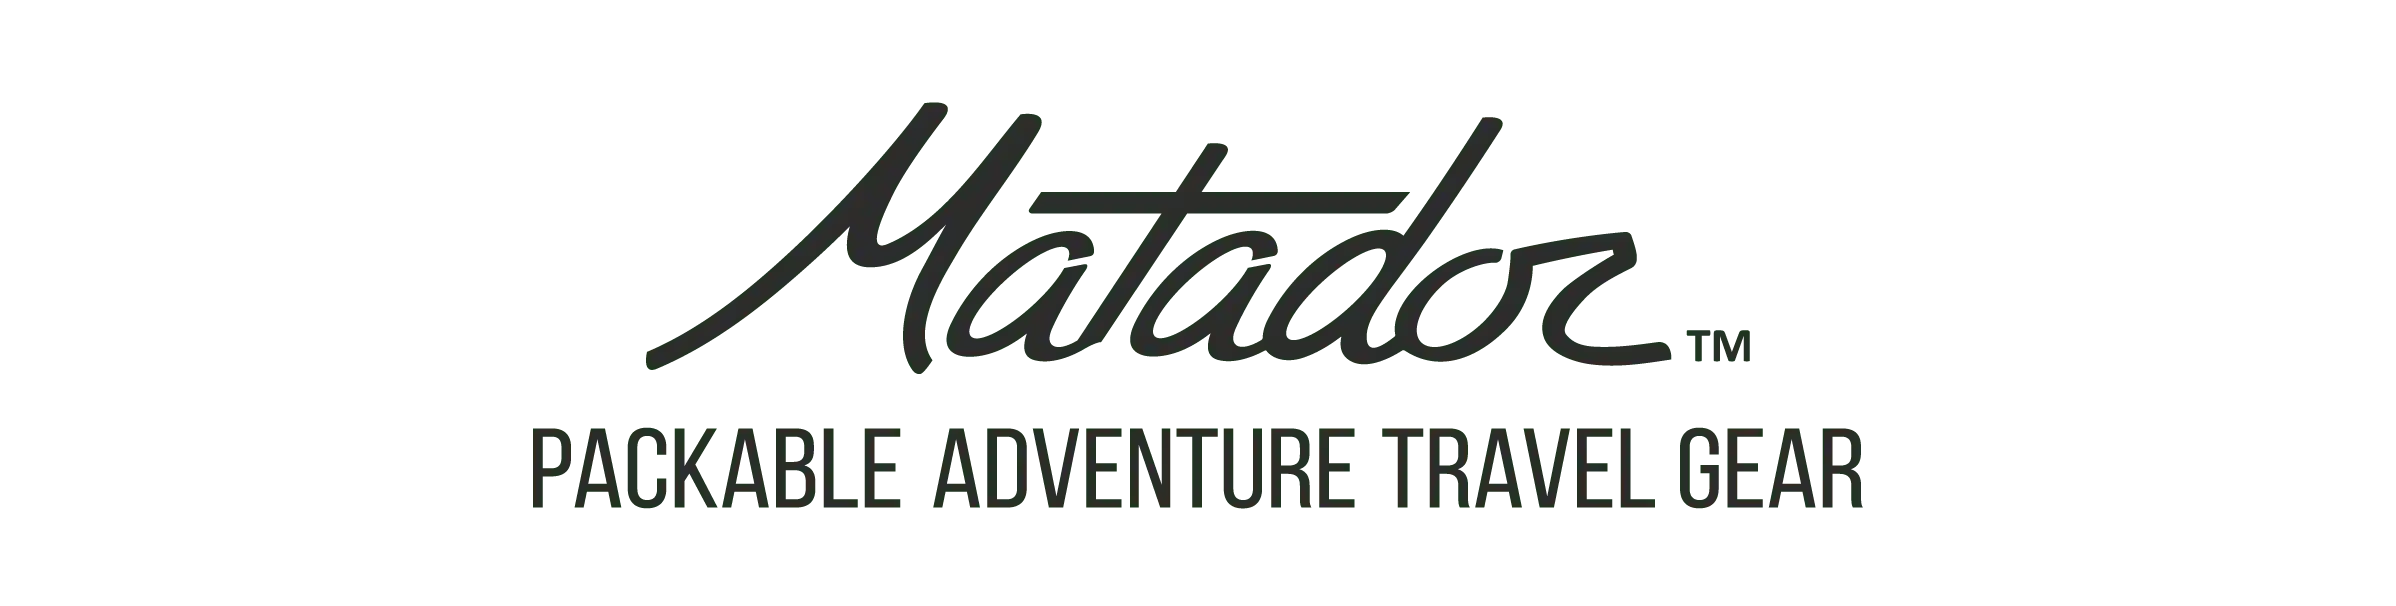 Matador Packable Adventure Gear